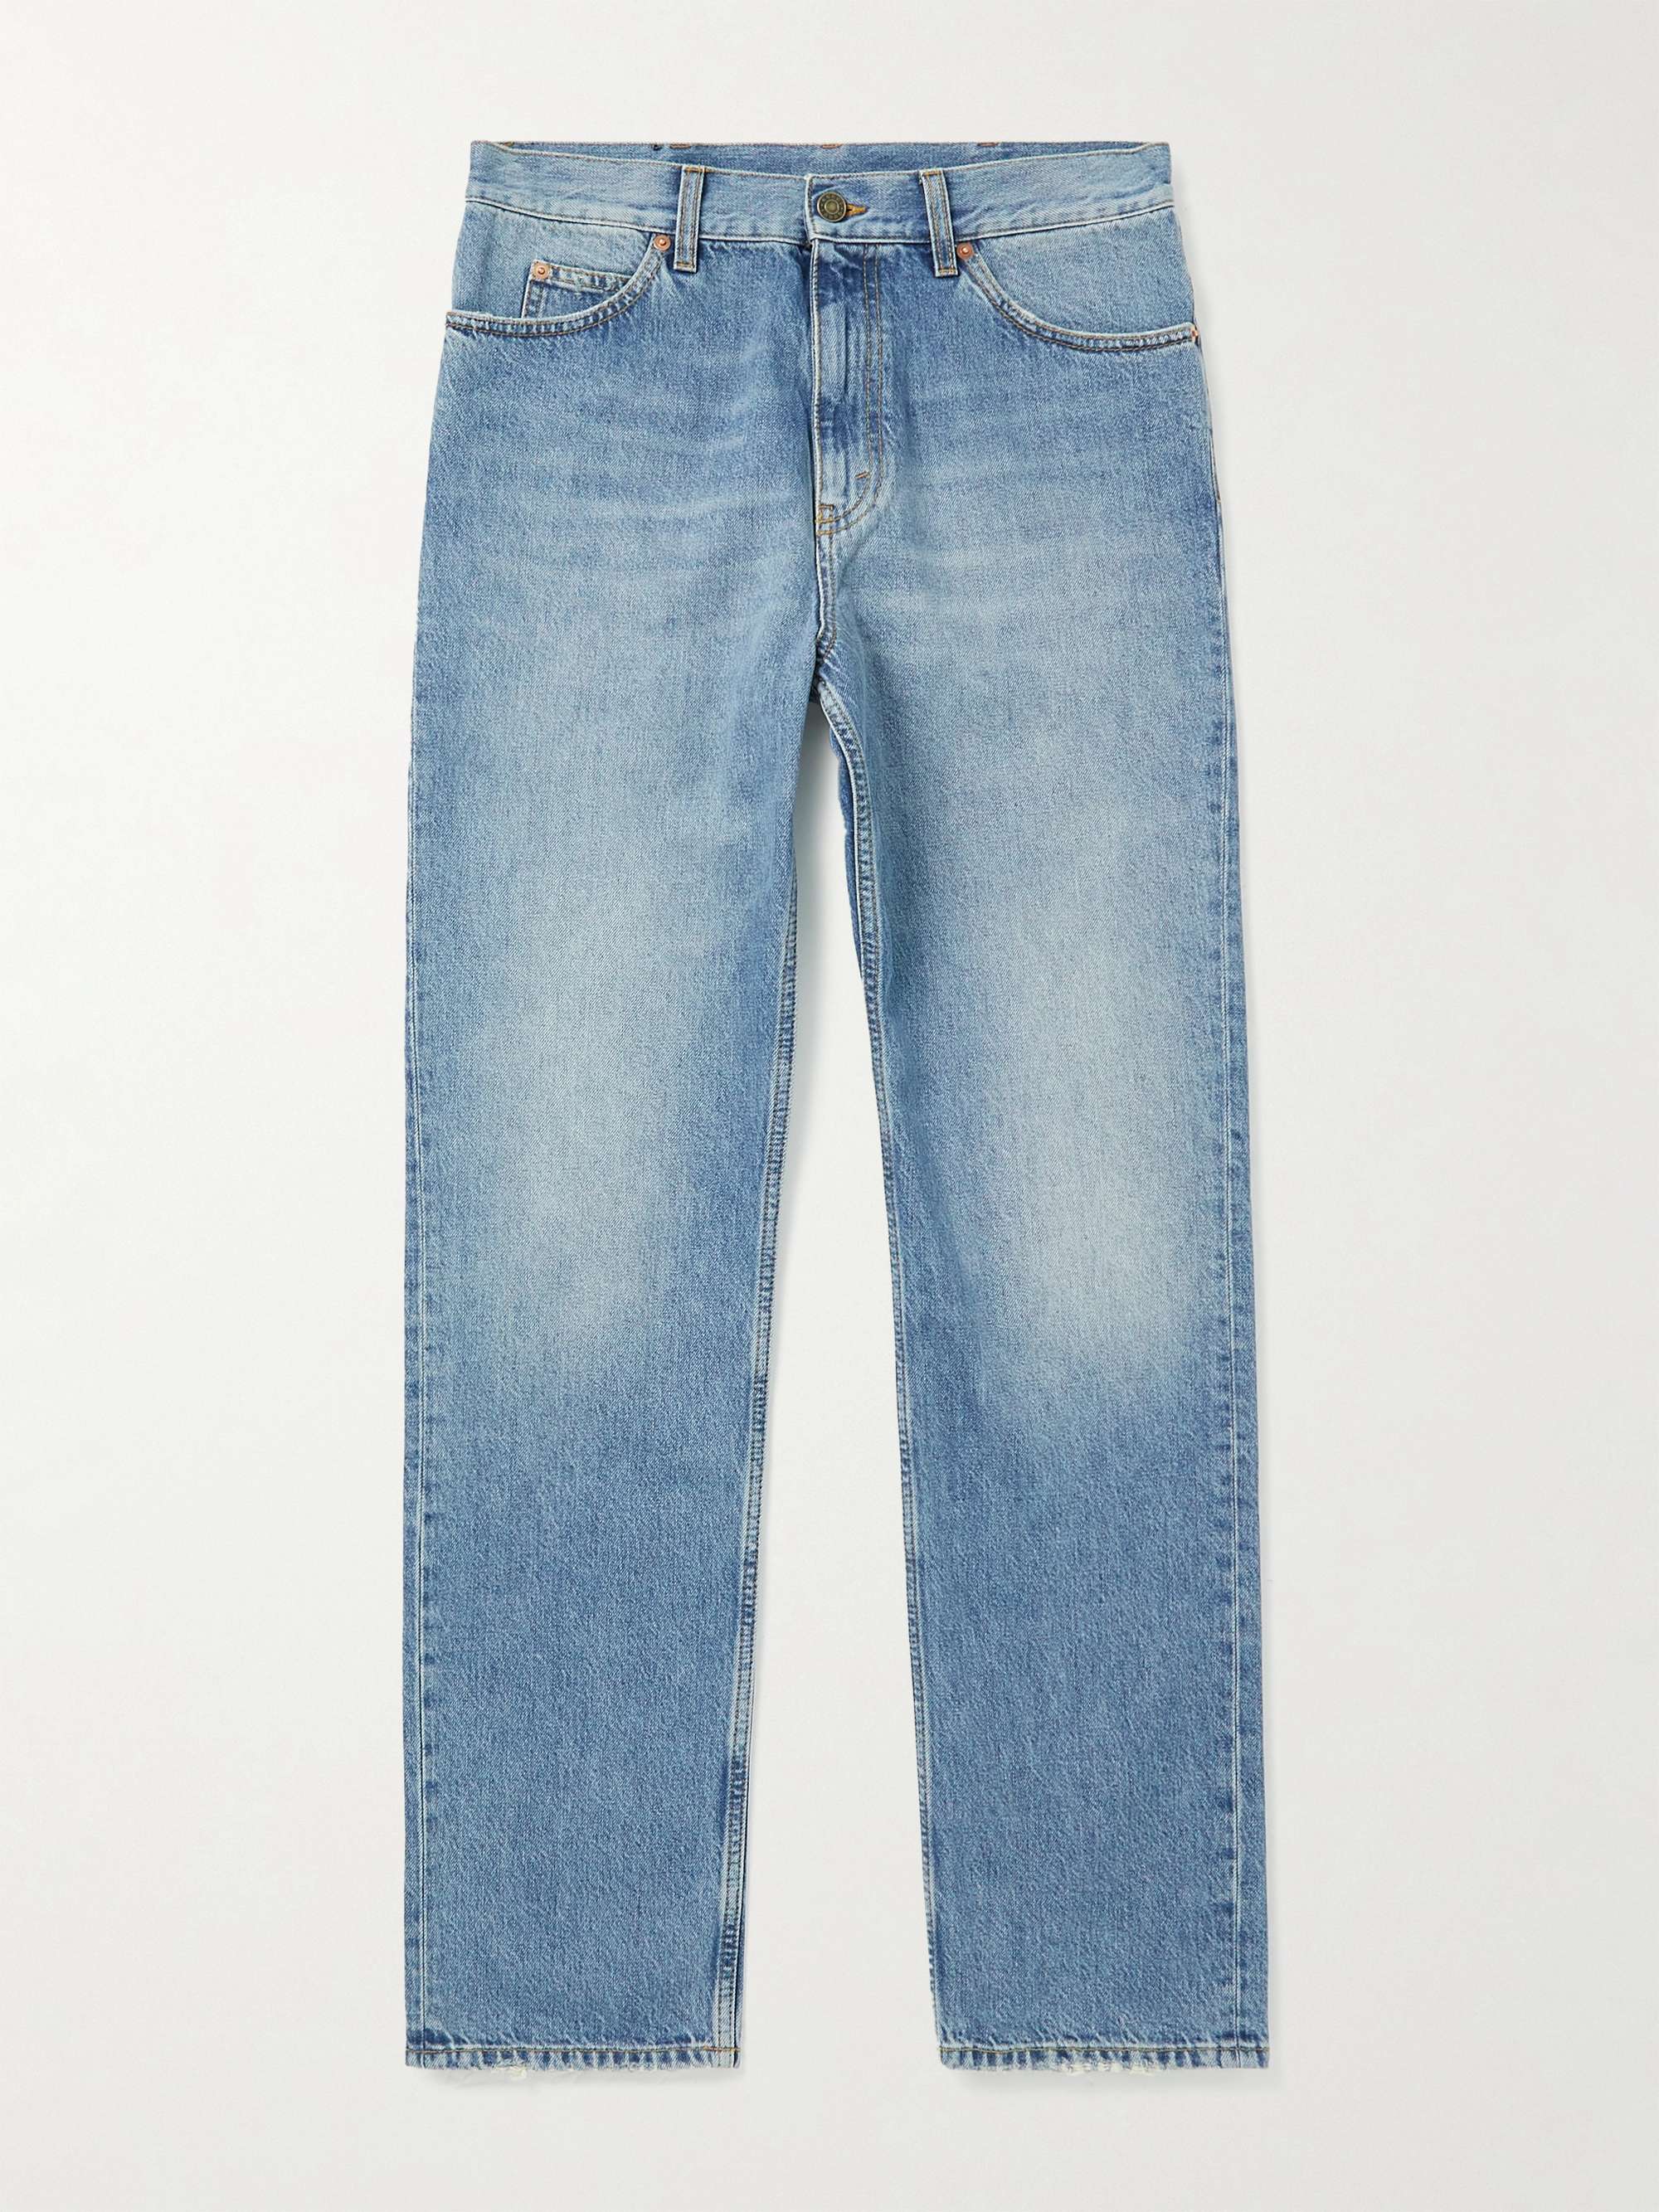 GUCCI Straight-Leg Horsebit-Detailed Jeans for Men | MR PORTER